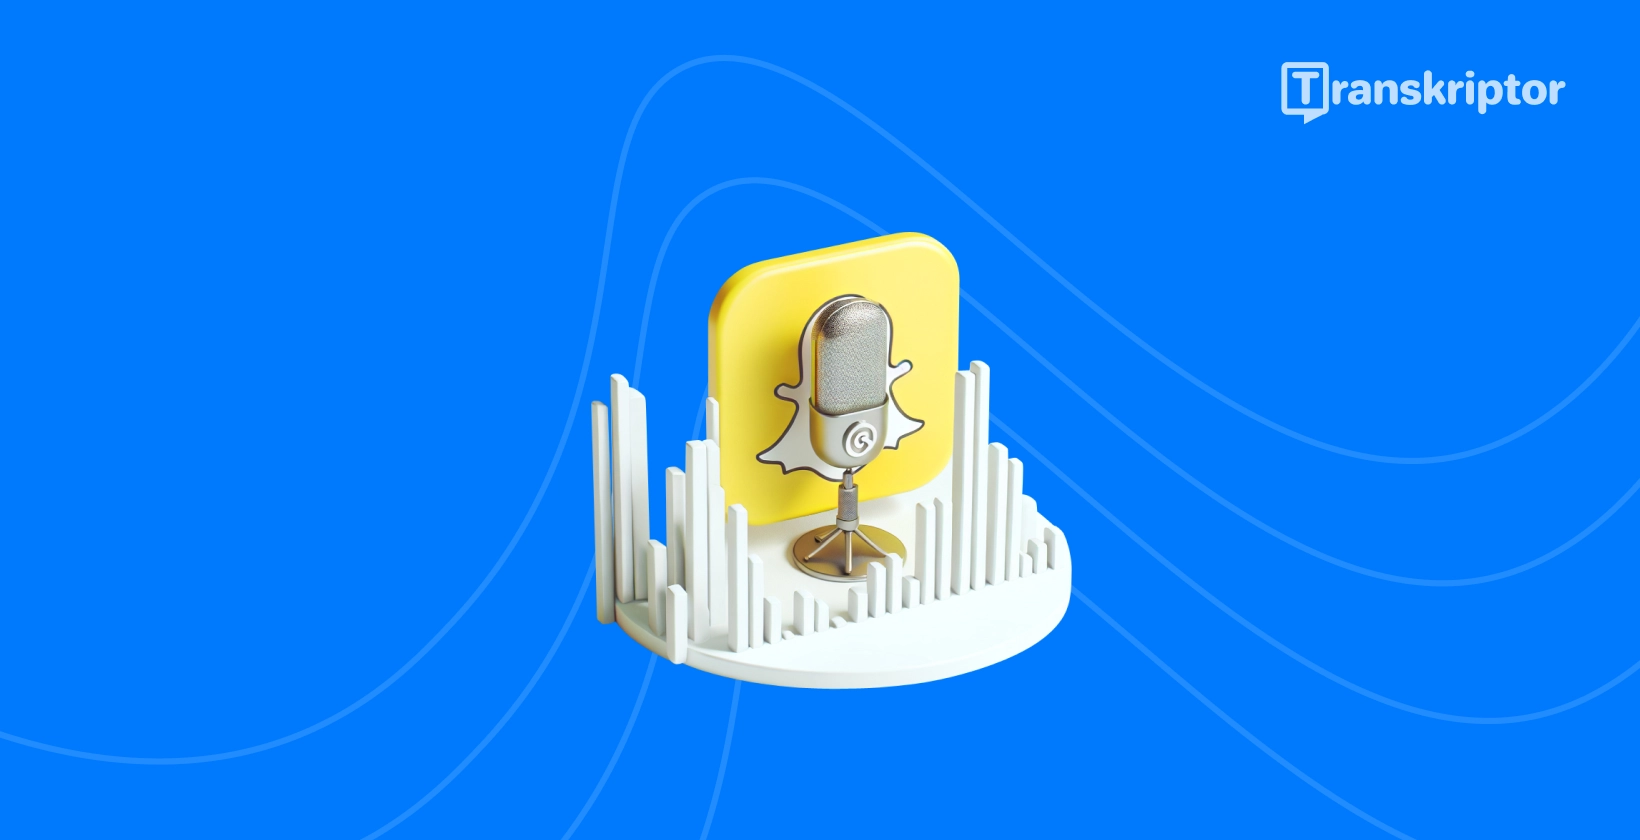 Snapchat spöke och mikrofonikon symboliserar ljudtranskriptionsguide av Transkriptor.